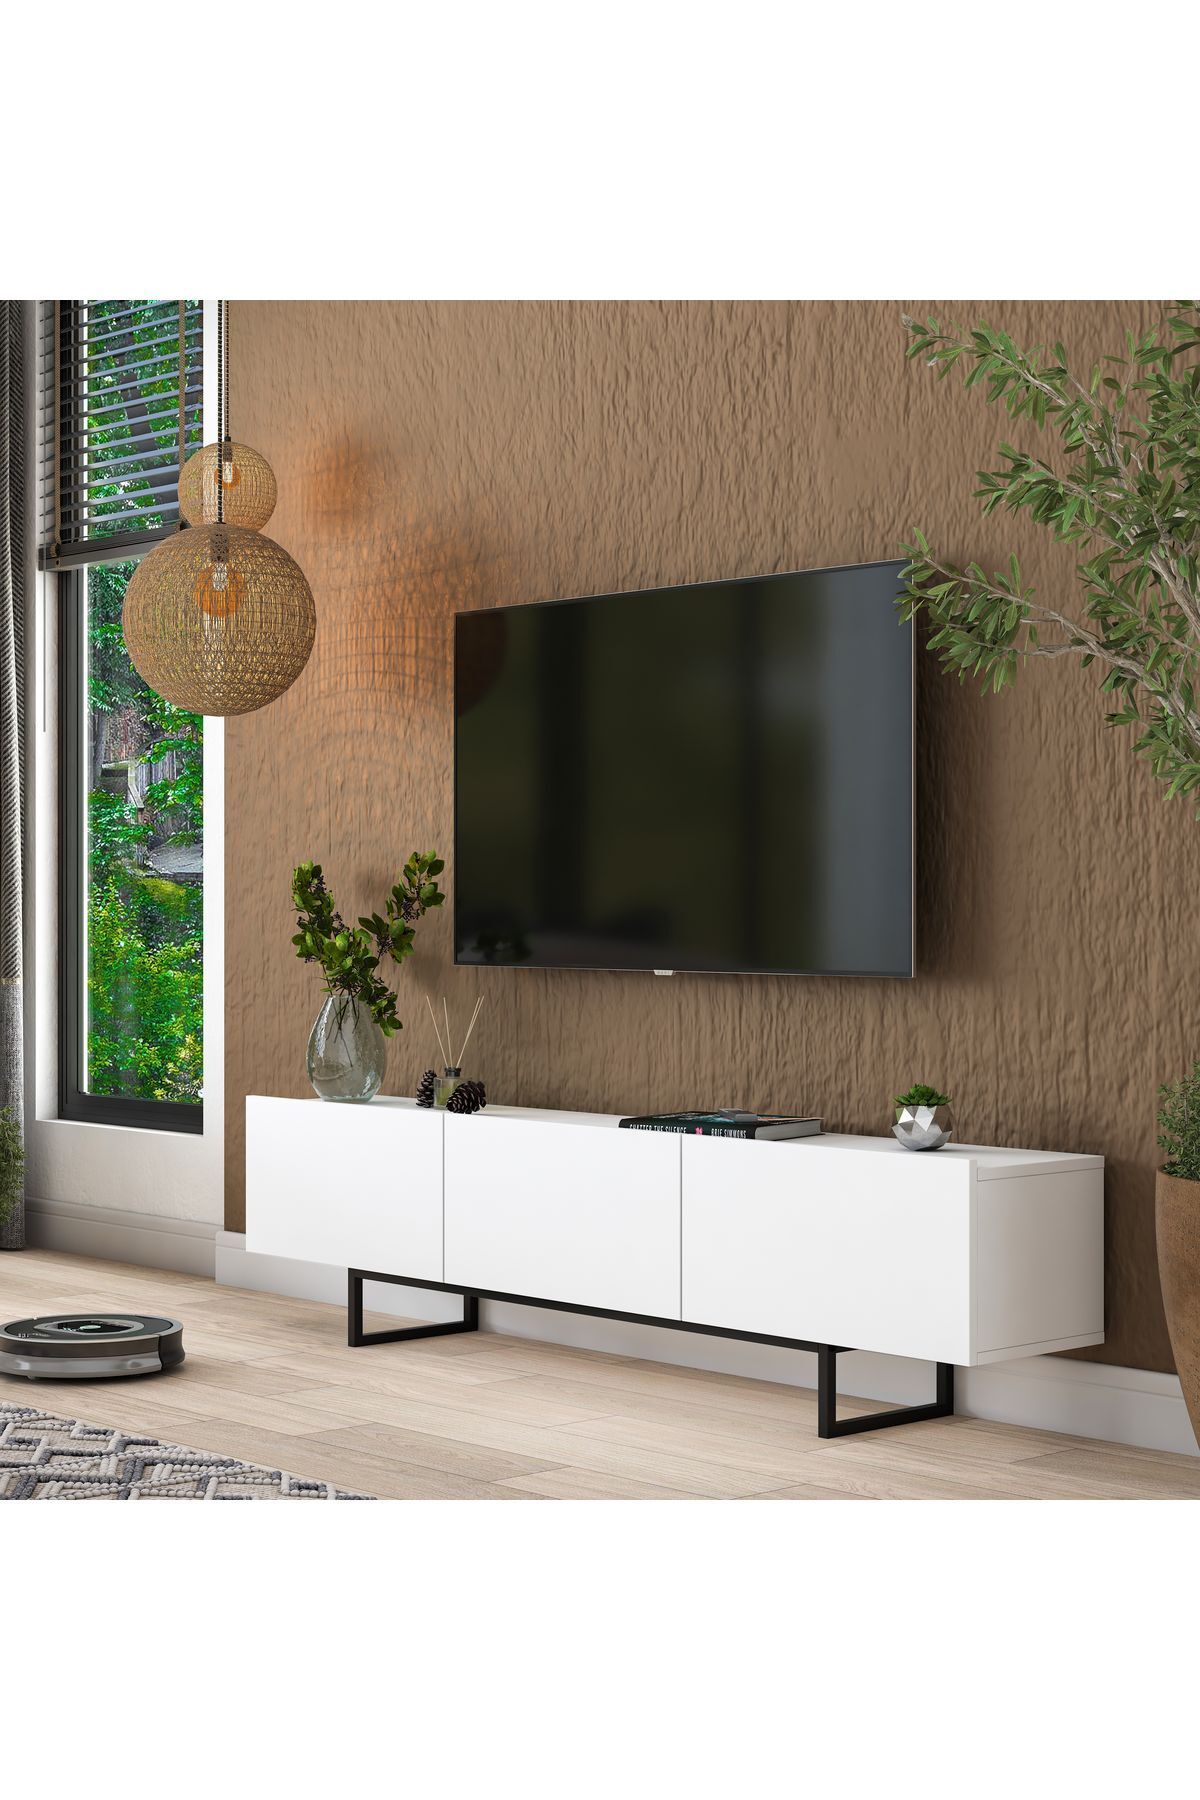 Rani Mobilya Rani AA136 Tv Ünitesi Düşer Kapaklı Metal Ayaklı Tv Sehpası 180 Cm Beyaz